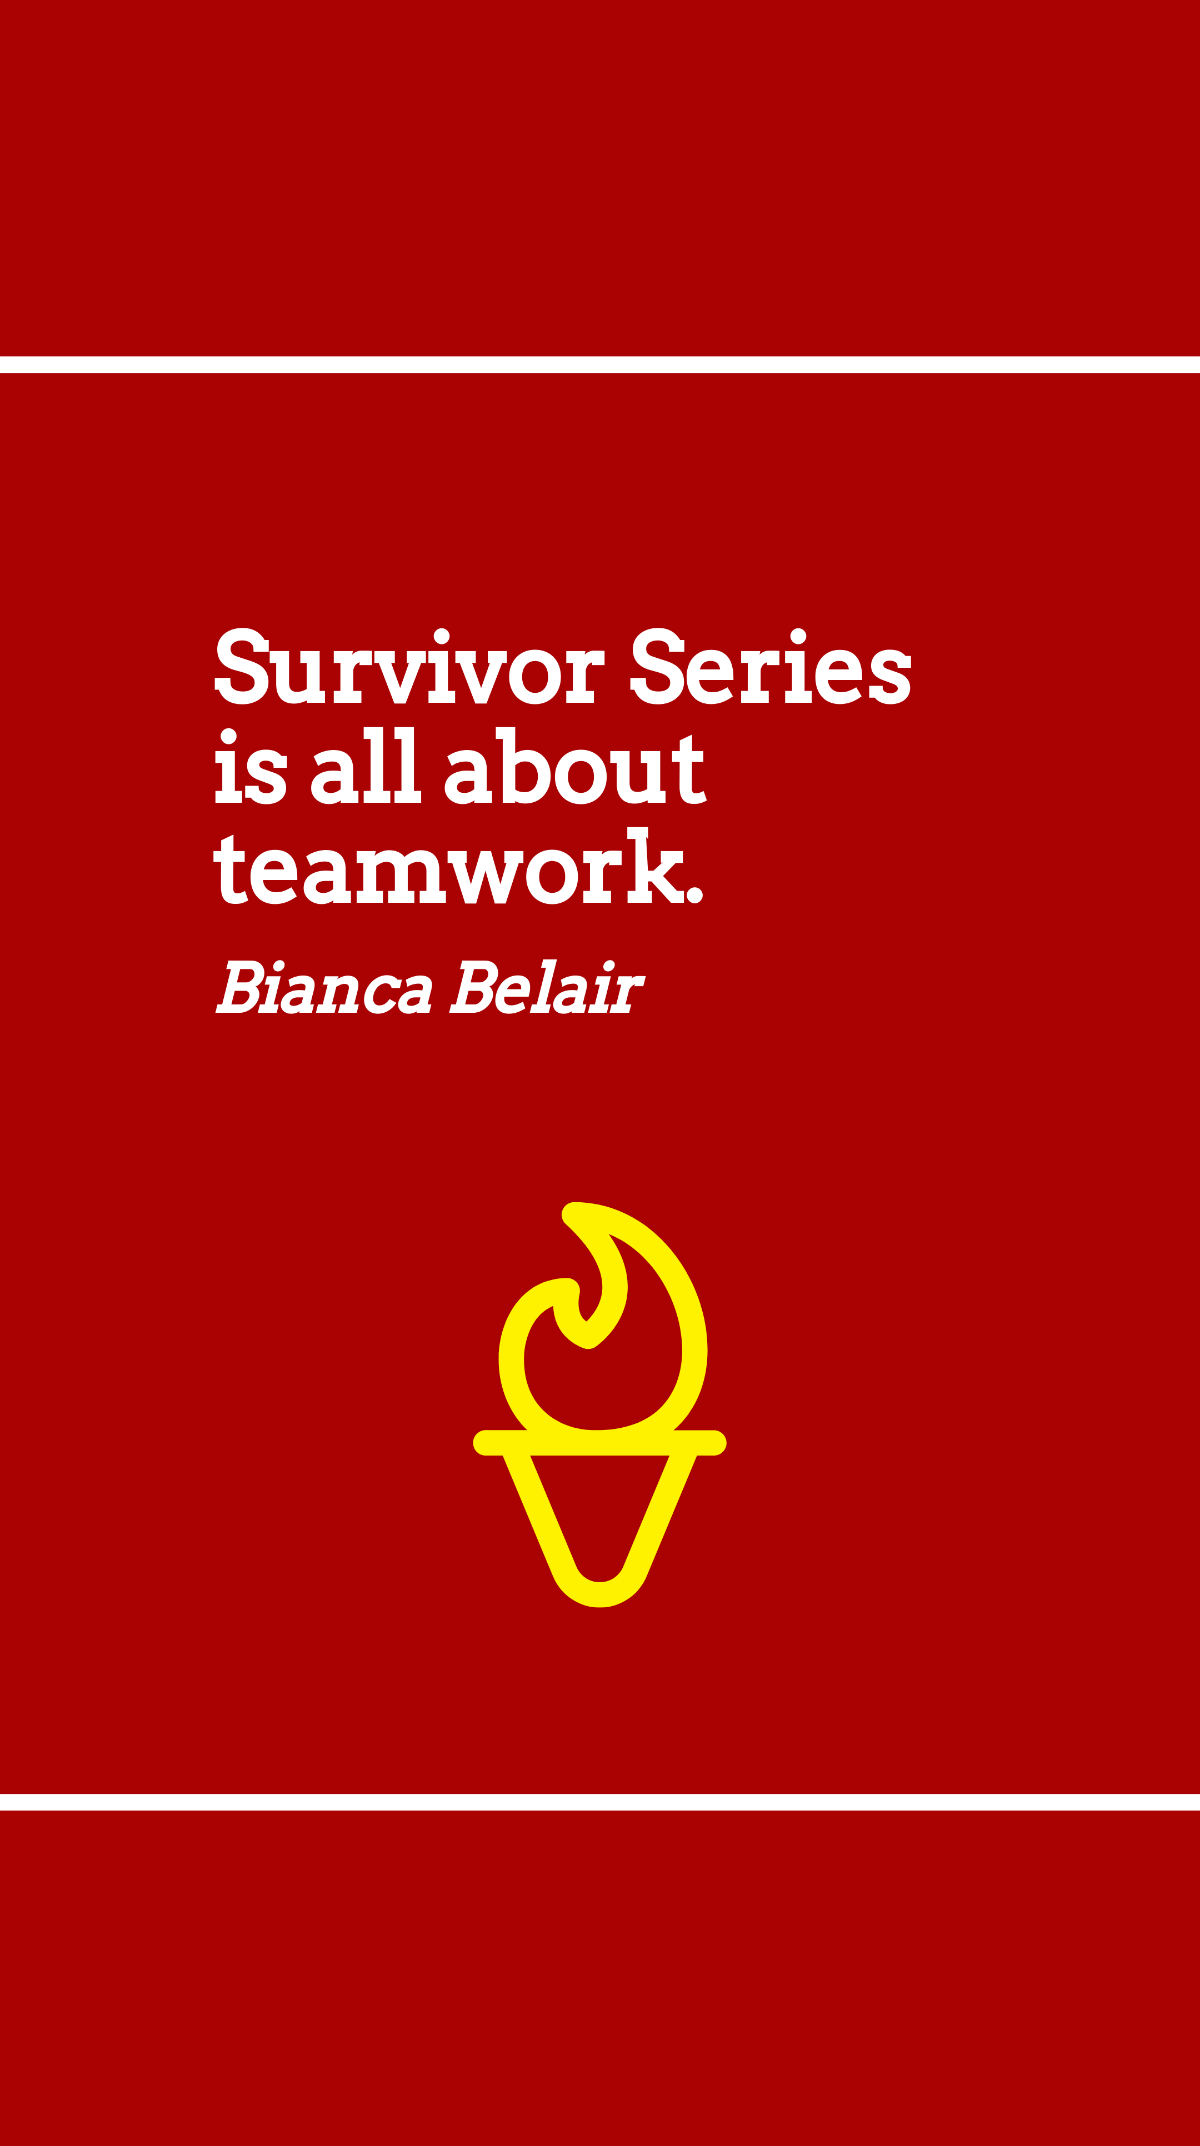 Bianca Belair - Survivor Series is all about teamwork. Template